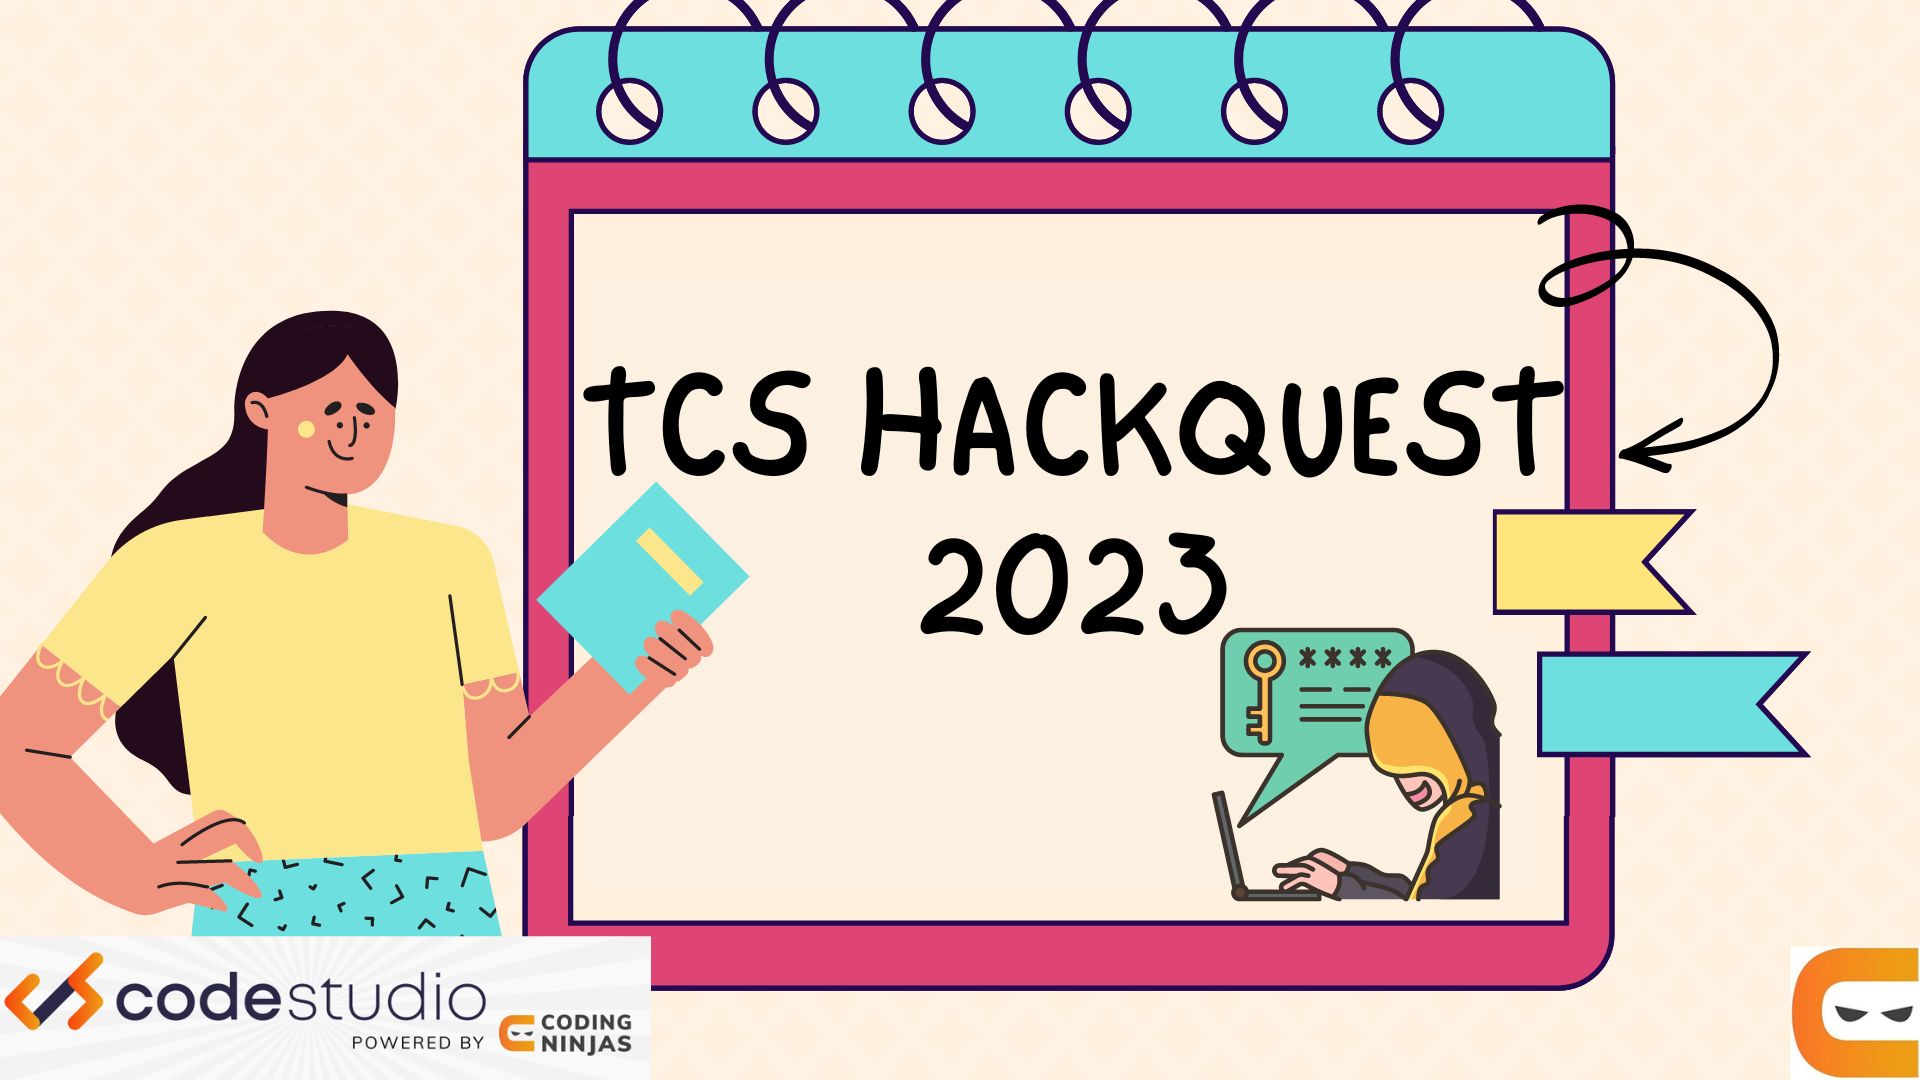 TCS HackQuest 2023